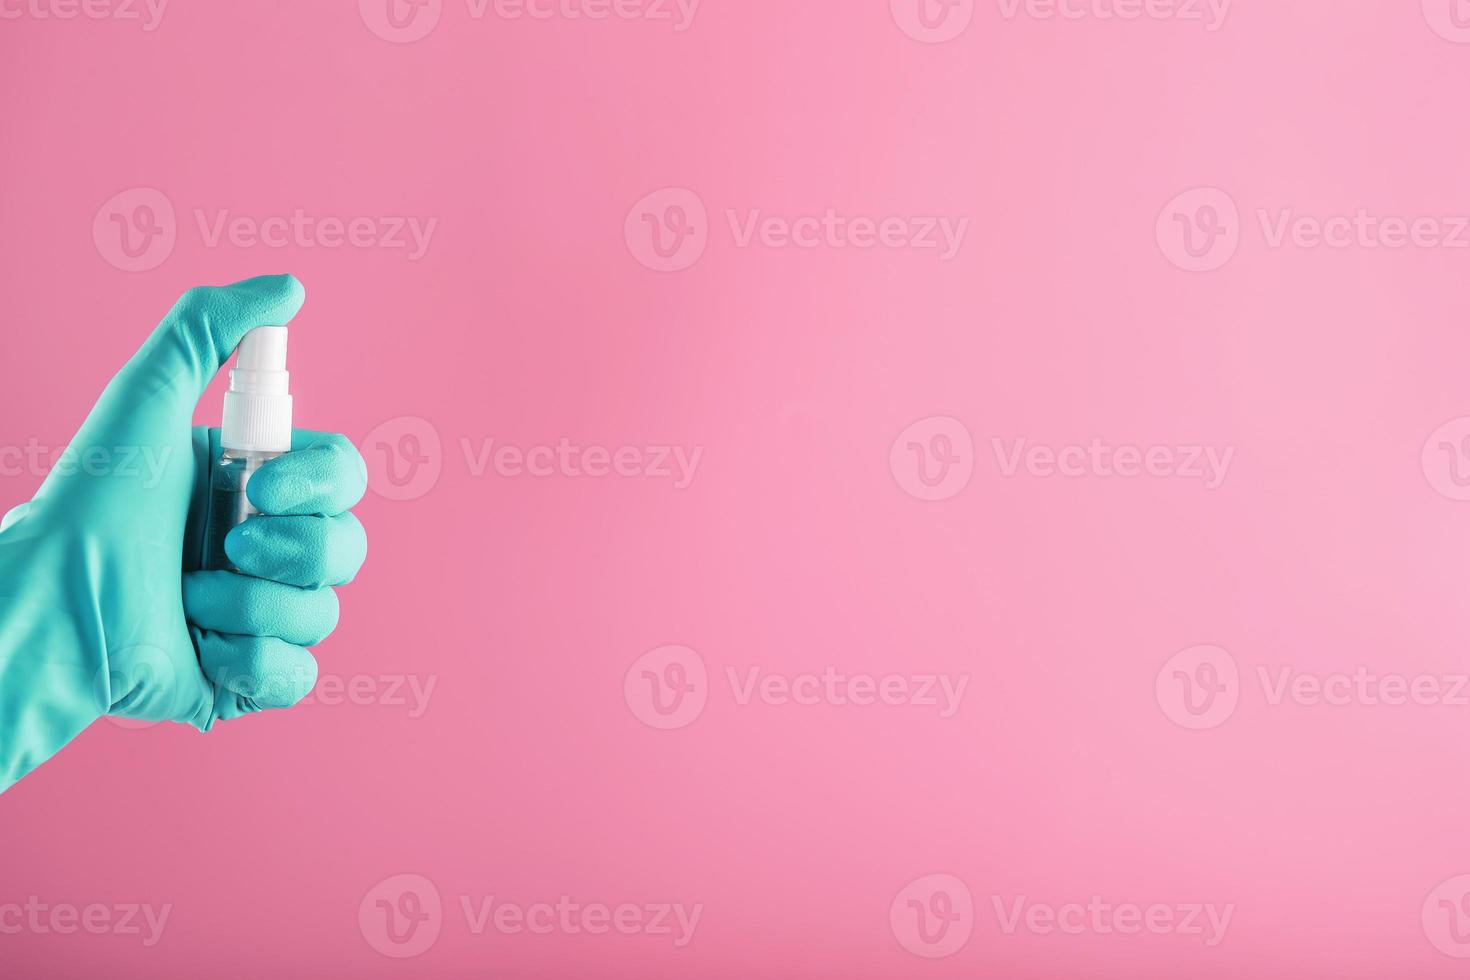 une main gantée de bleu tient un désinfectant sur fond rose. traitement antiseptique des mains à partir d'un désinfectant bactérien. photo